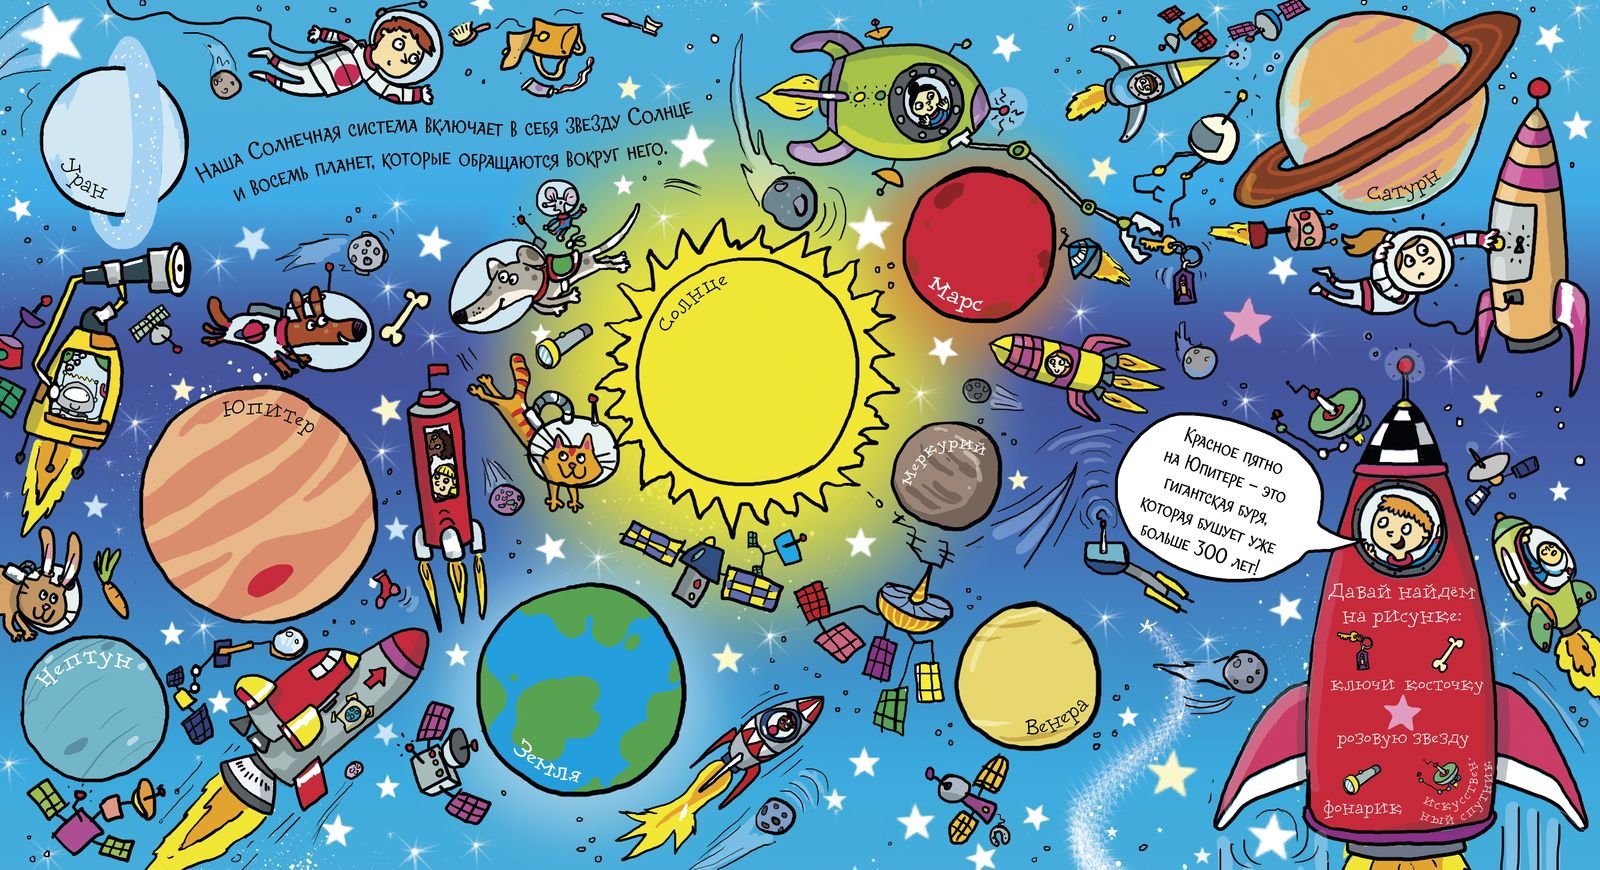 Квиз игра ко дню космонавтики. Детям о космосе. Тема космос для детей. Космос картинки для детей. Косомсдля дошкольников.